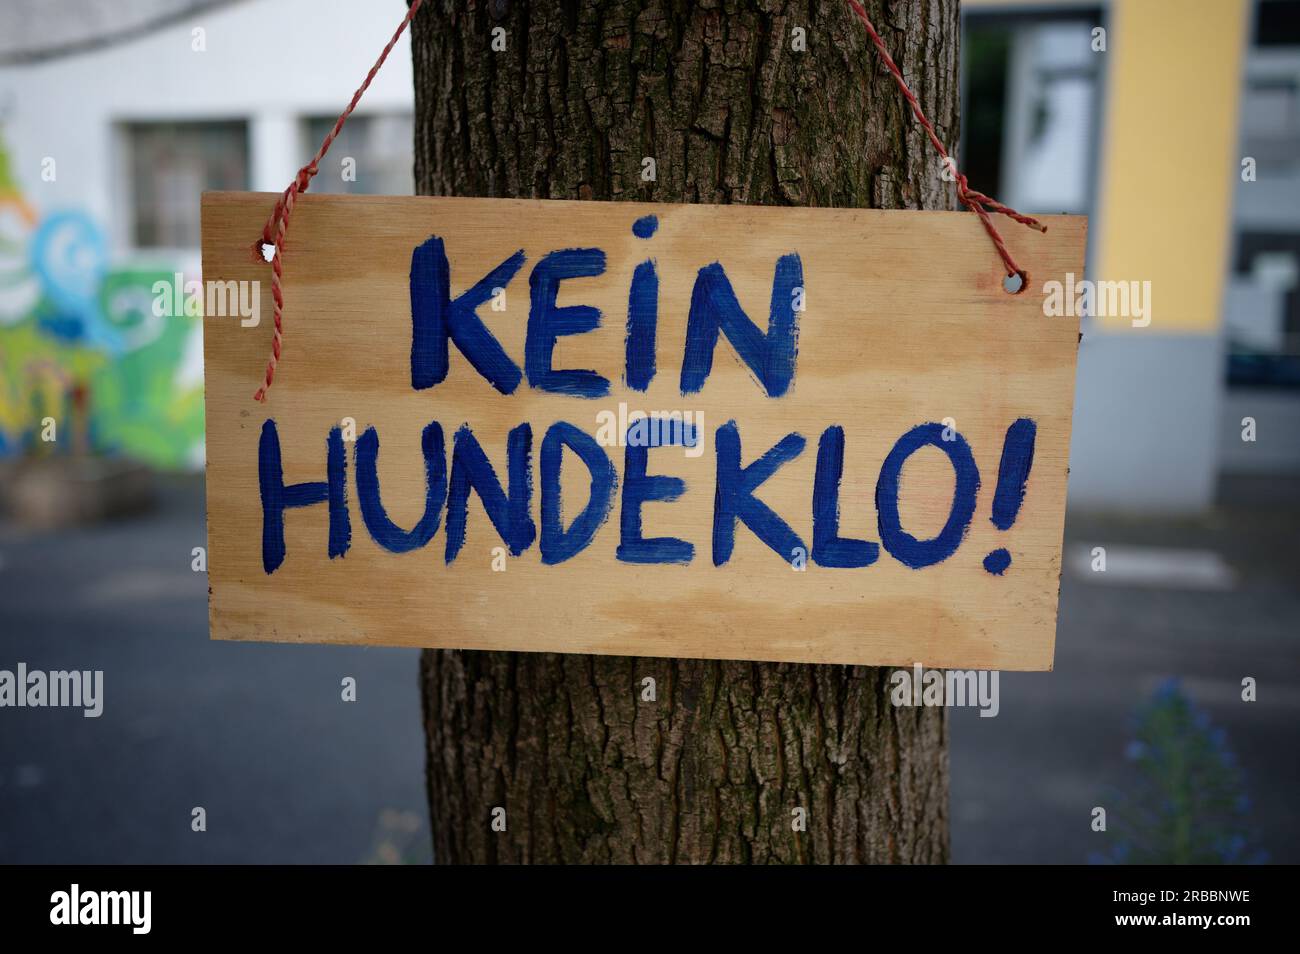 Ein handgemaltes Holzschild mit deutscher Inschrift - keine Hundetoilette - hängt in einer Stadt an einem Baum Stockfoto